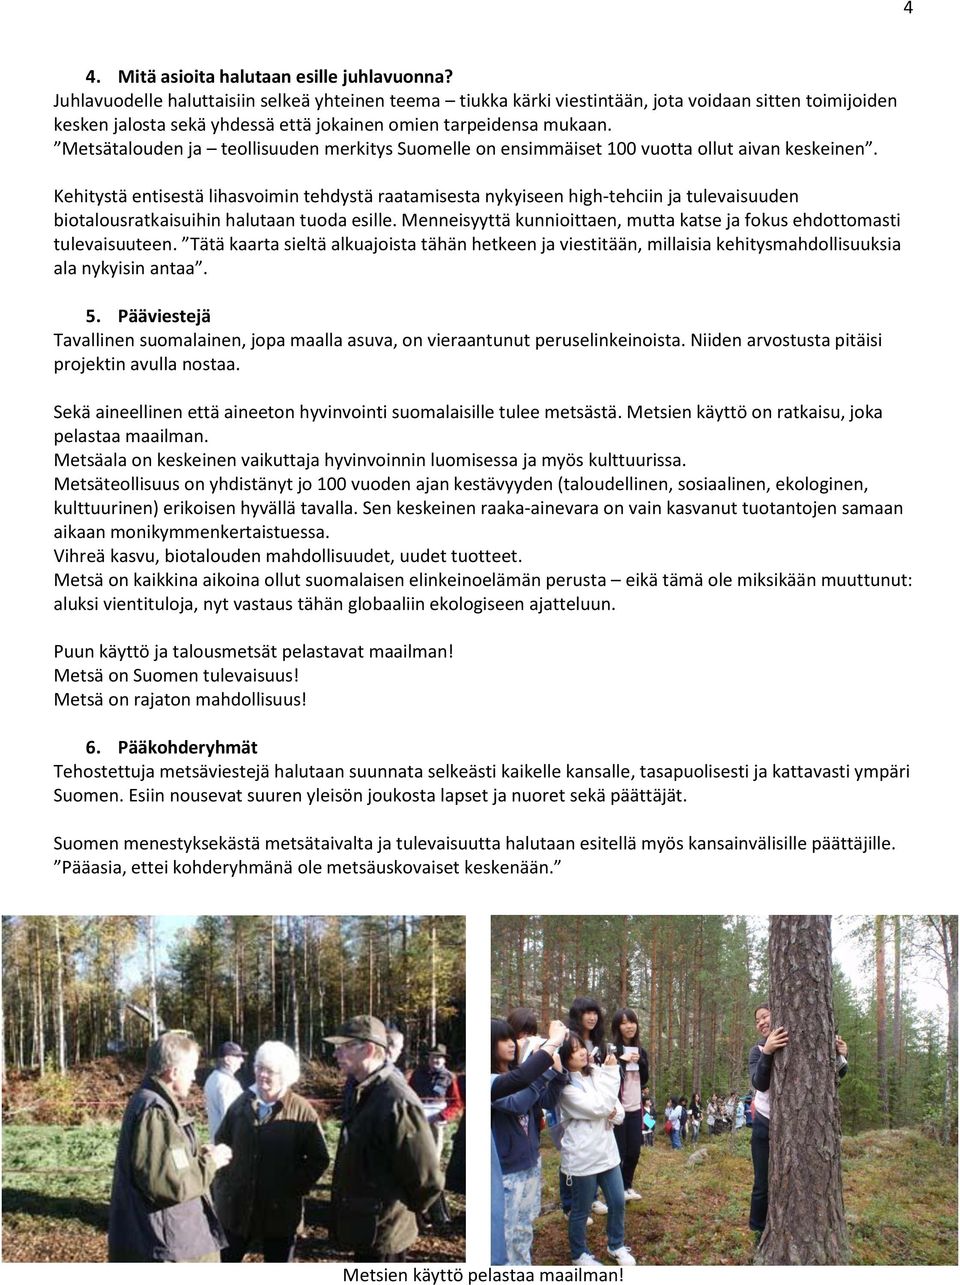 Metsätalouden ja teollisuuden merkitys Suomelle on ensimmäiset 100 vuotta ollut aivan keskeinen.